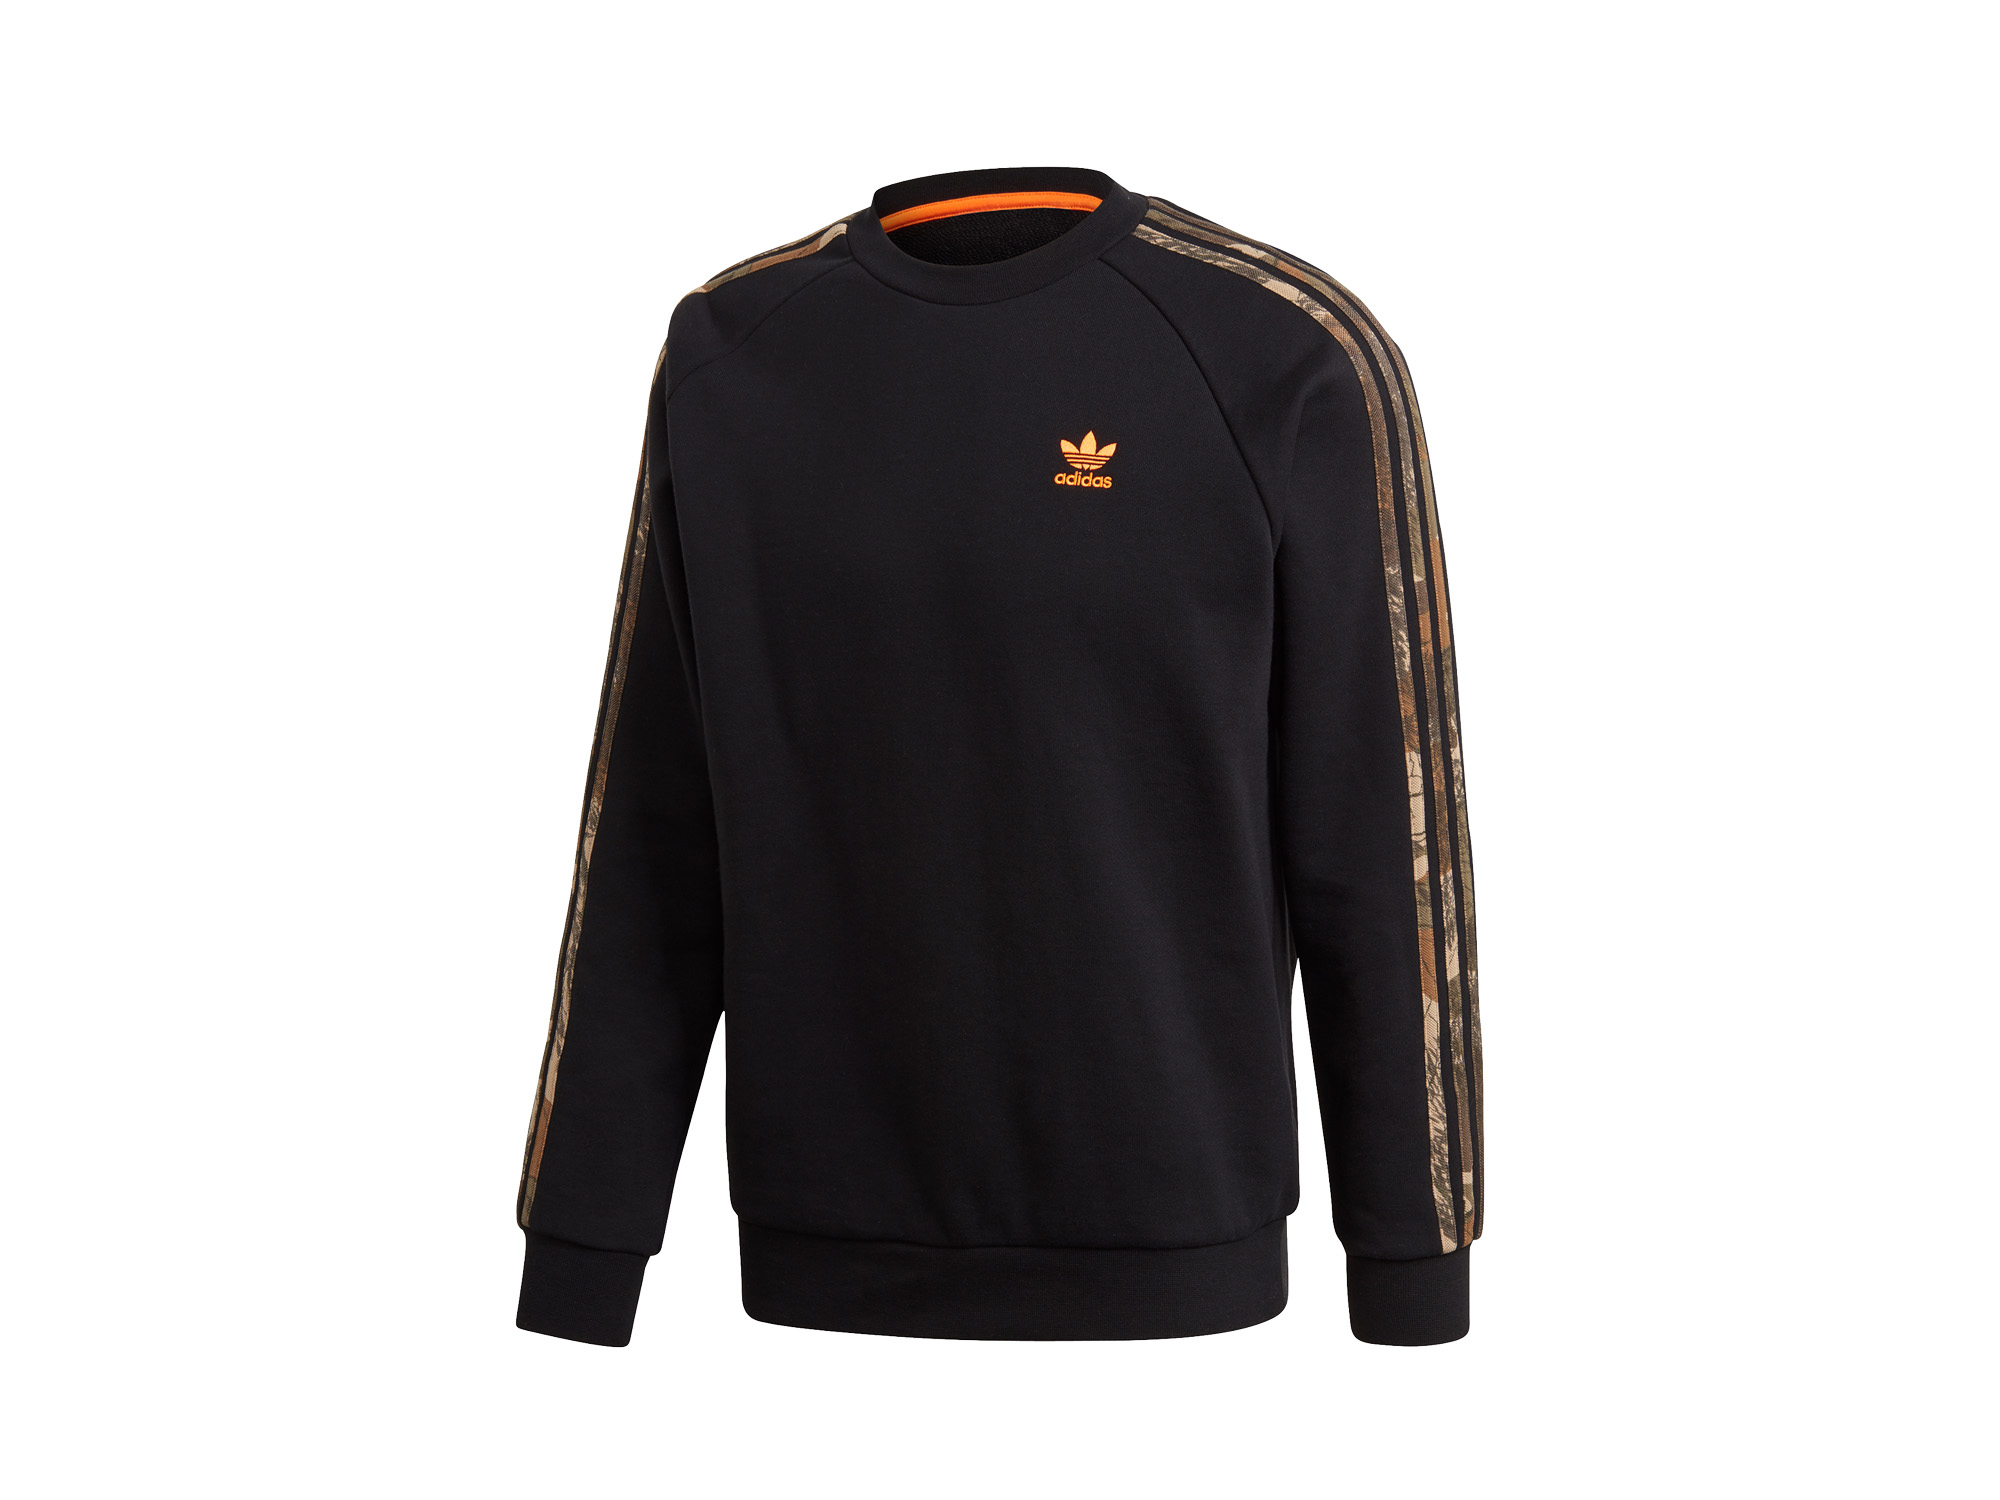 Adidas Originals Camo Sweatshirt